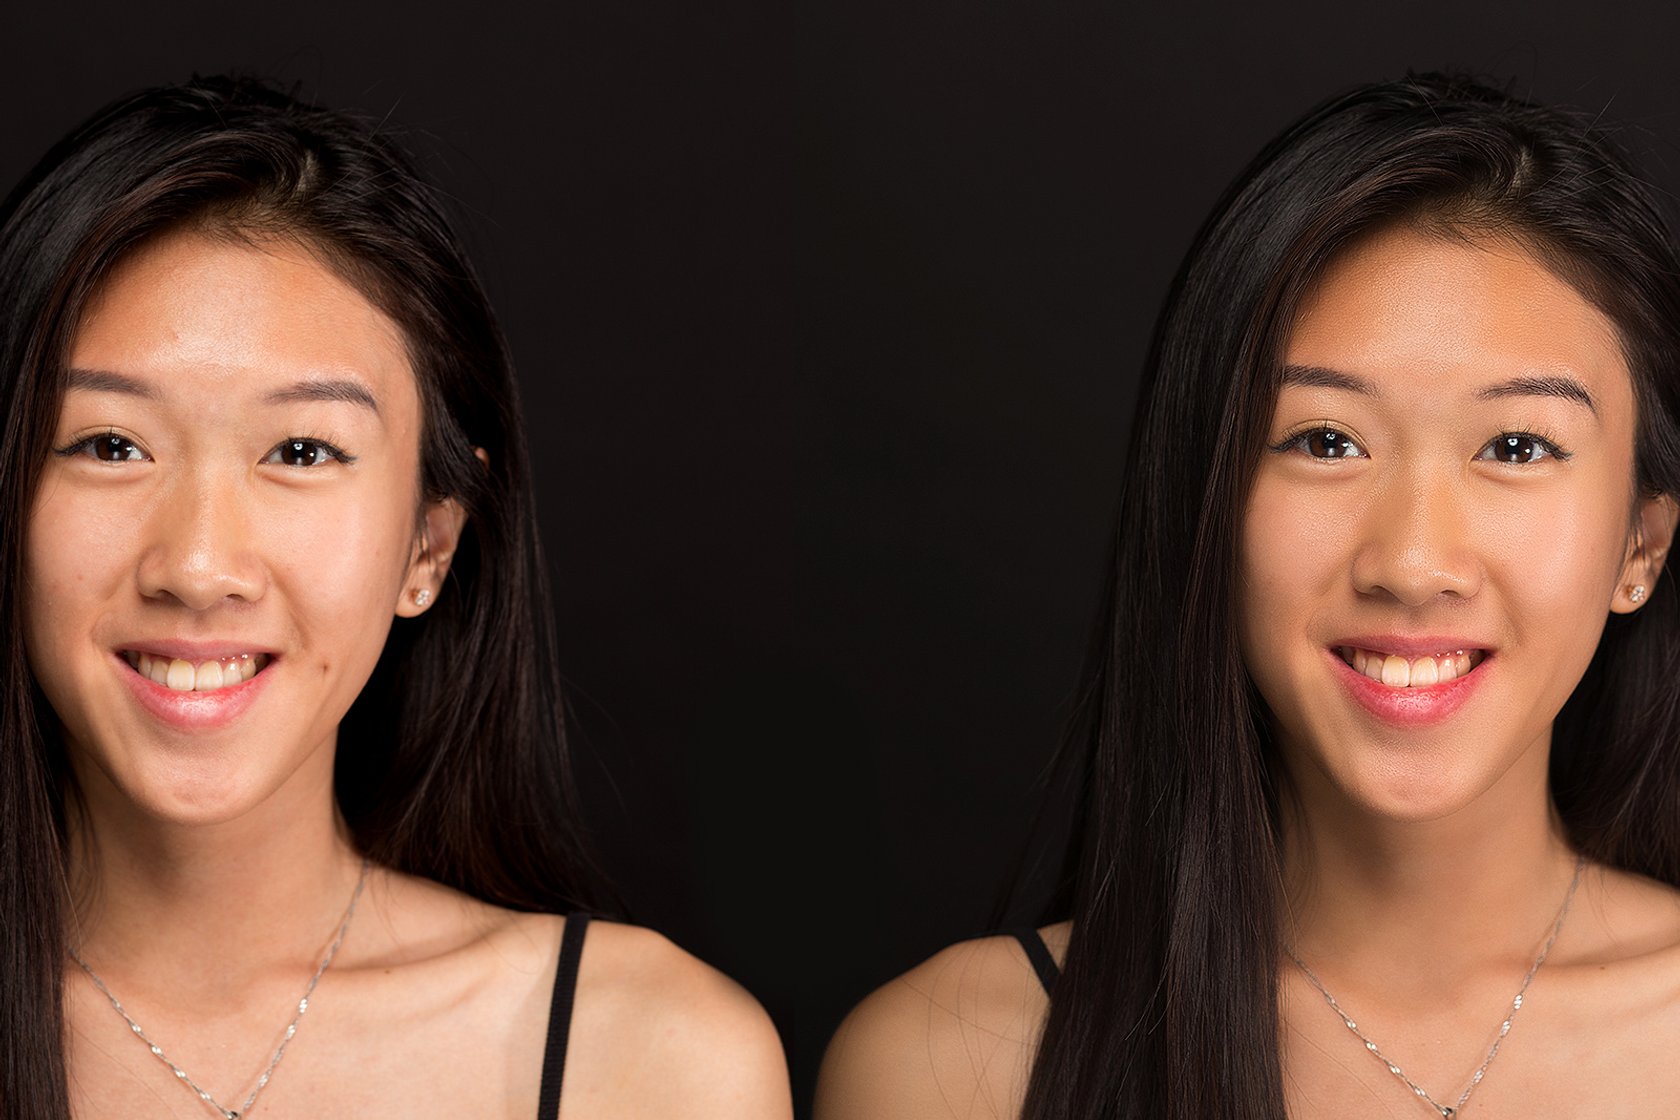 Faites briller vos portraits avec les nouveaux outils de Luminar 4 | Skylum Blog(3)